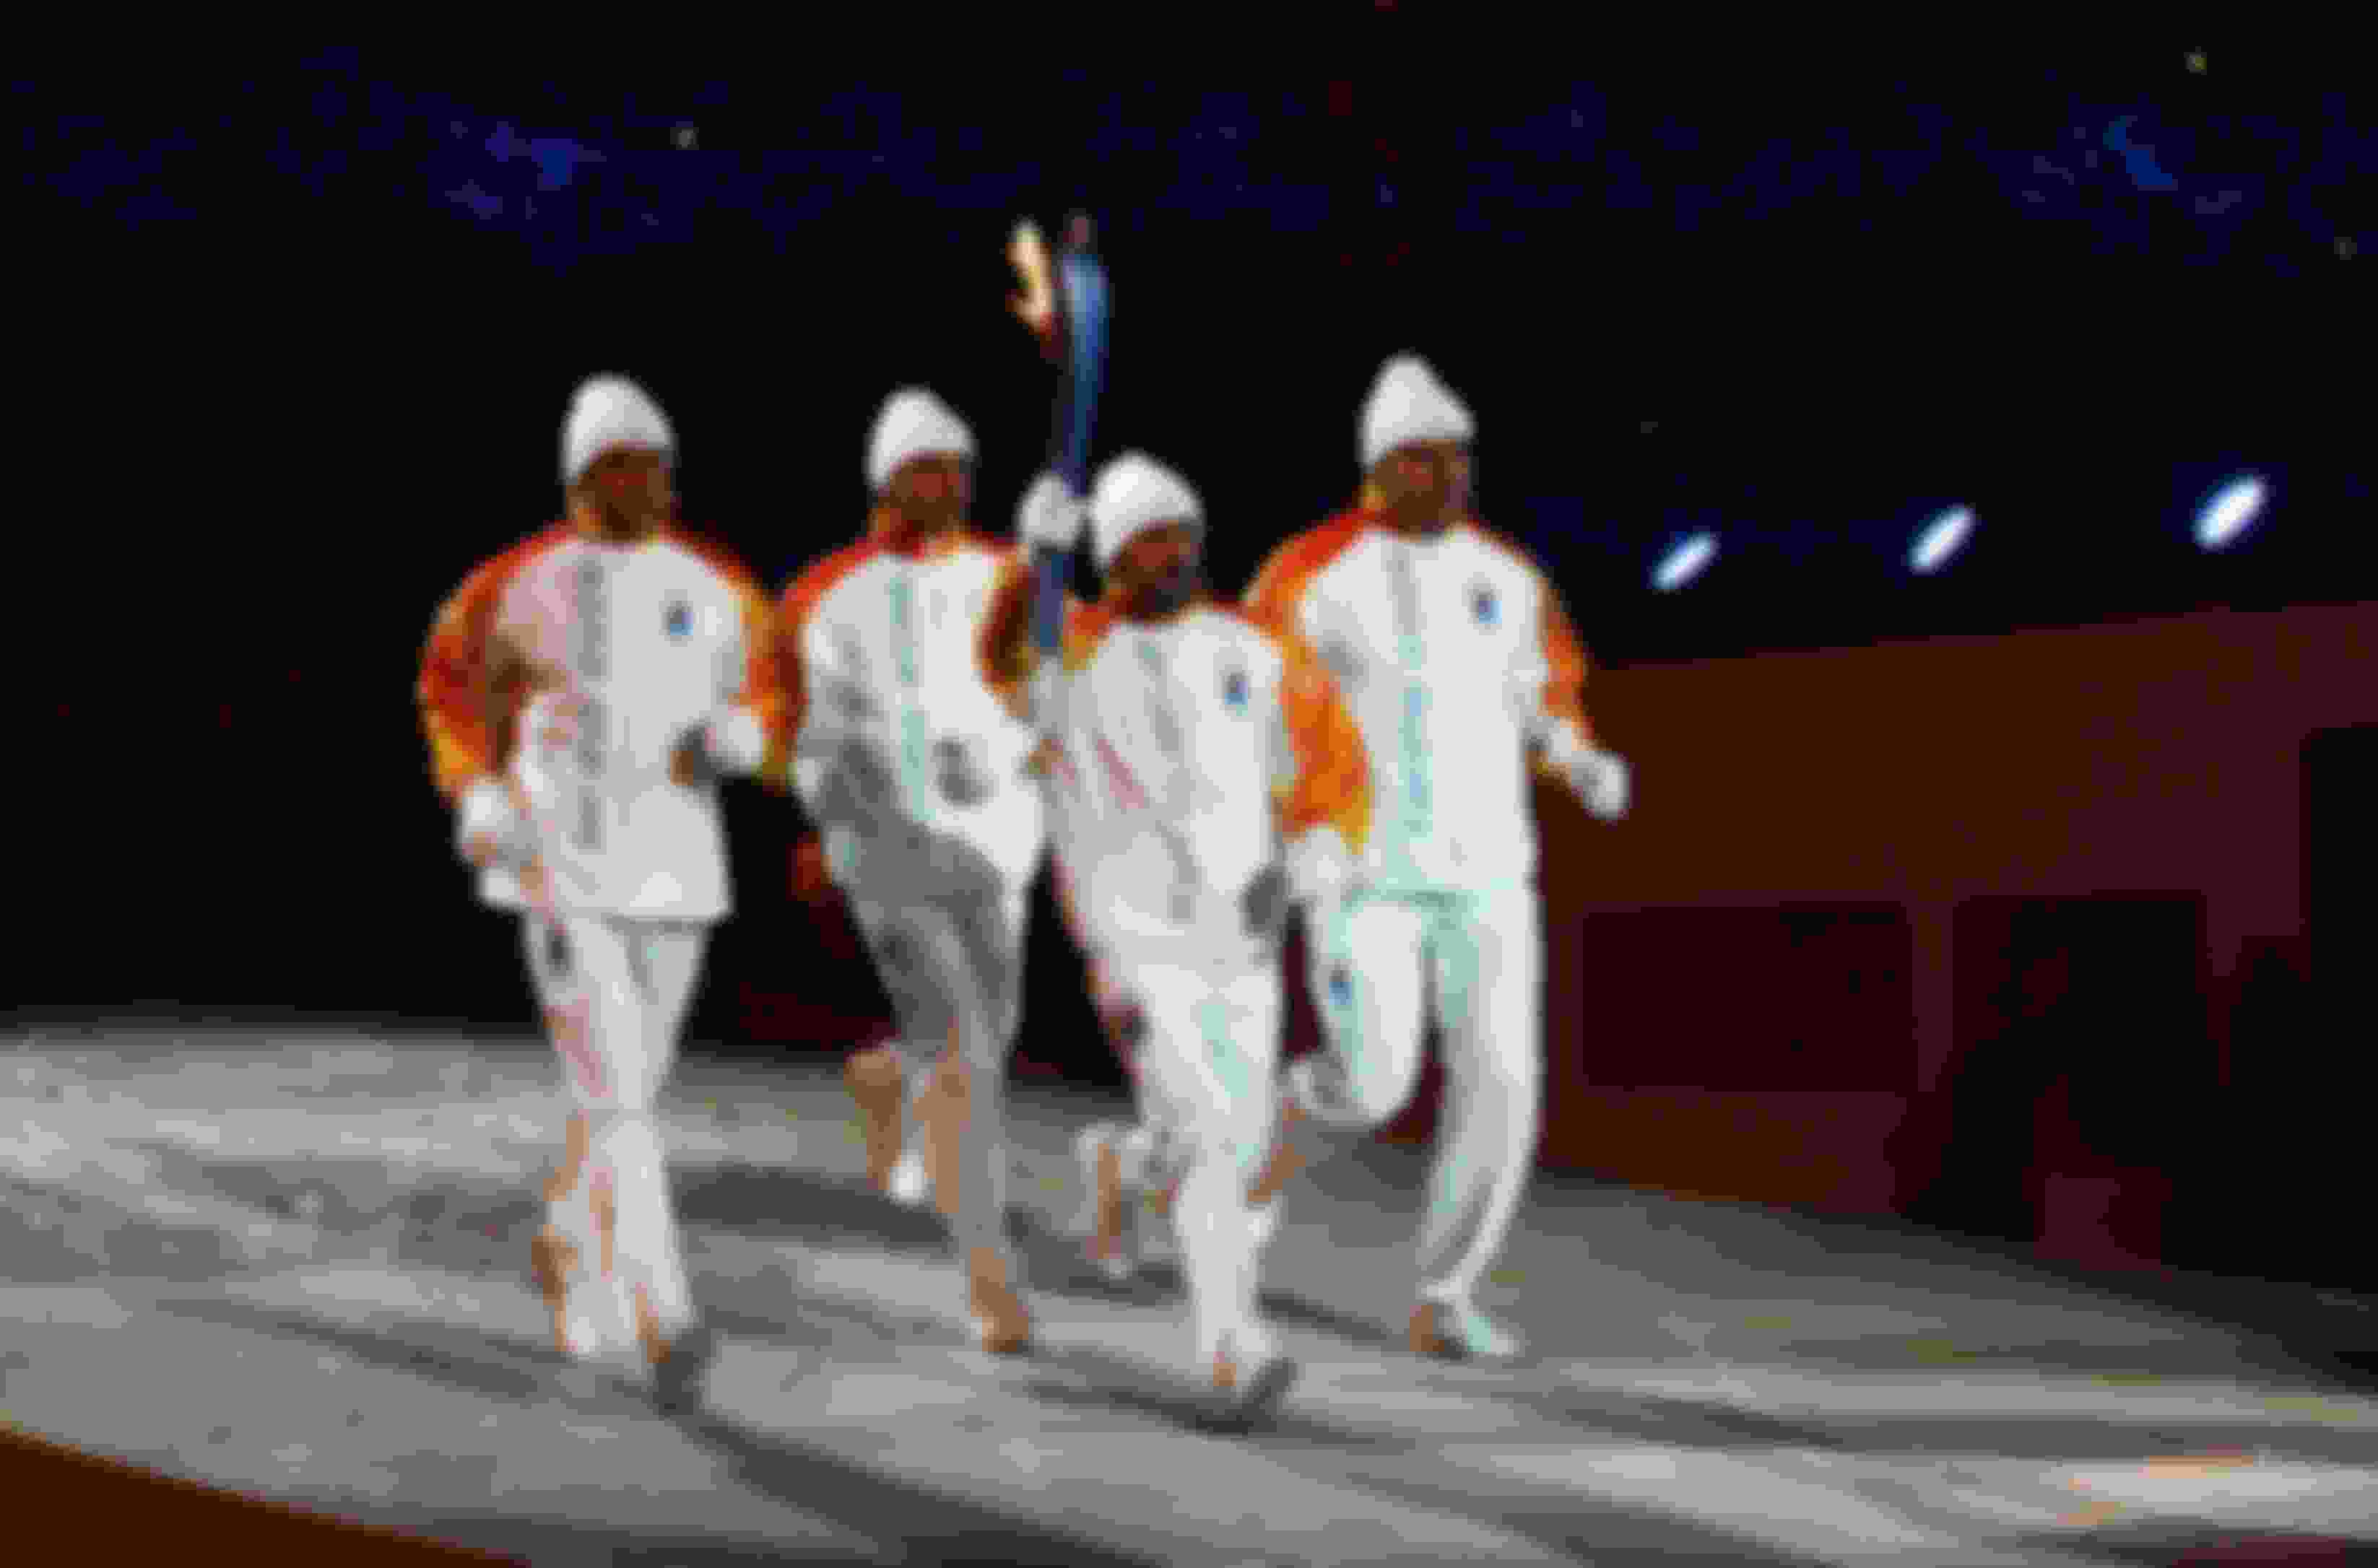 Silvio Fauner, Marco Albarello, Maurilio de Zolt e Giorgio Vanzetta: la storica staffetta della 4x10 di Lillehammer con la Torcia Olimpica alla Cerimonia di Apertura di Torino 2006. a Torino 2006